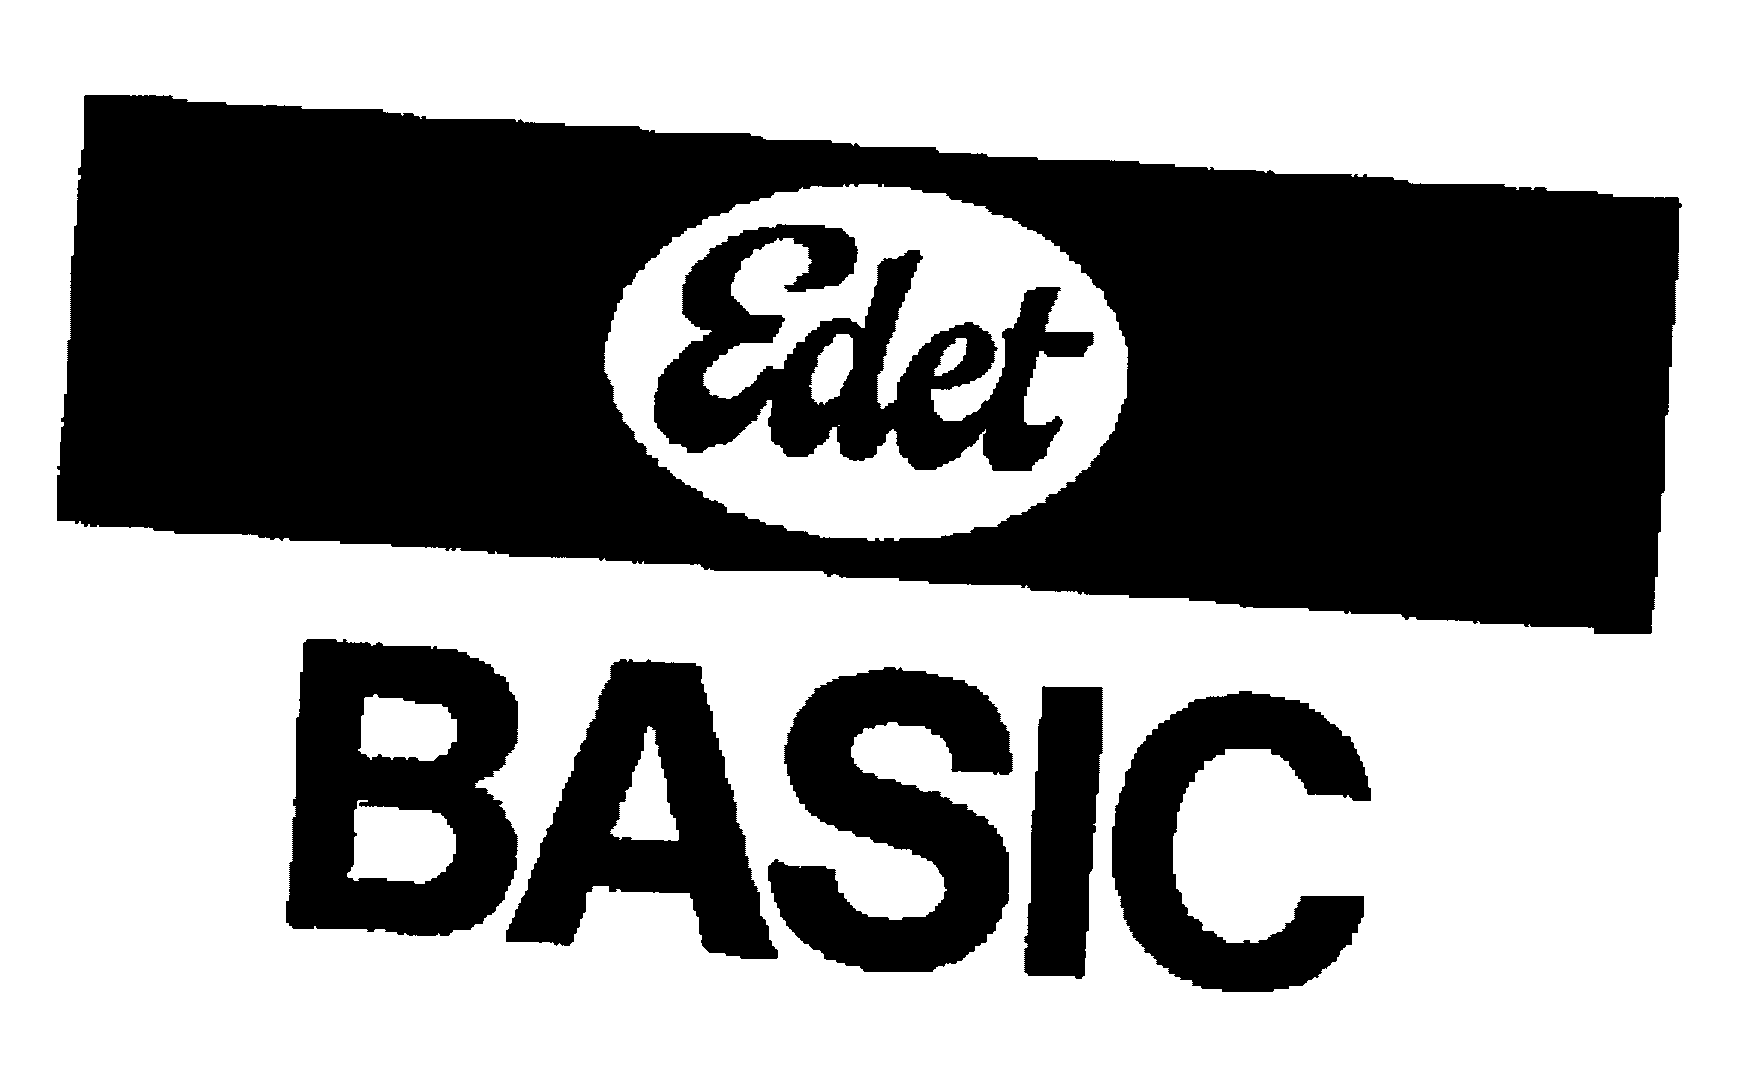  EDET BASIC